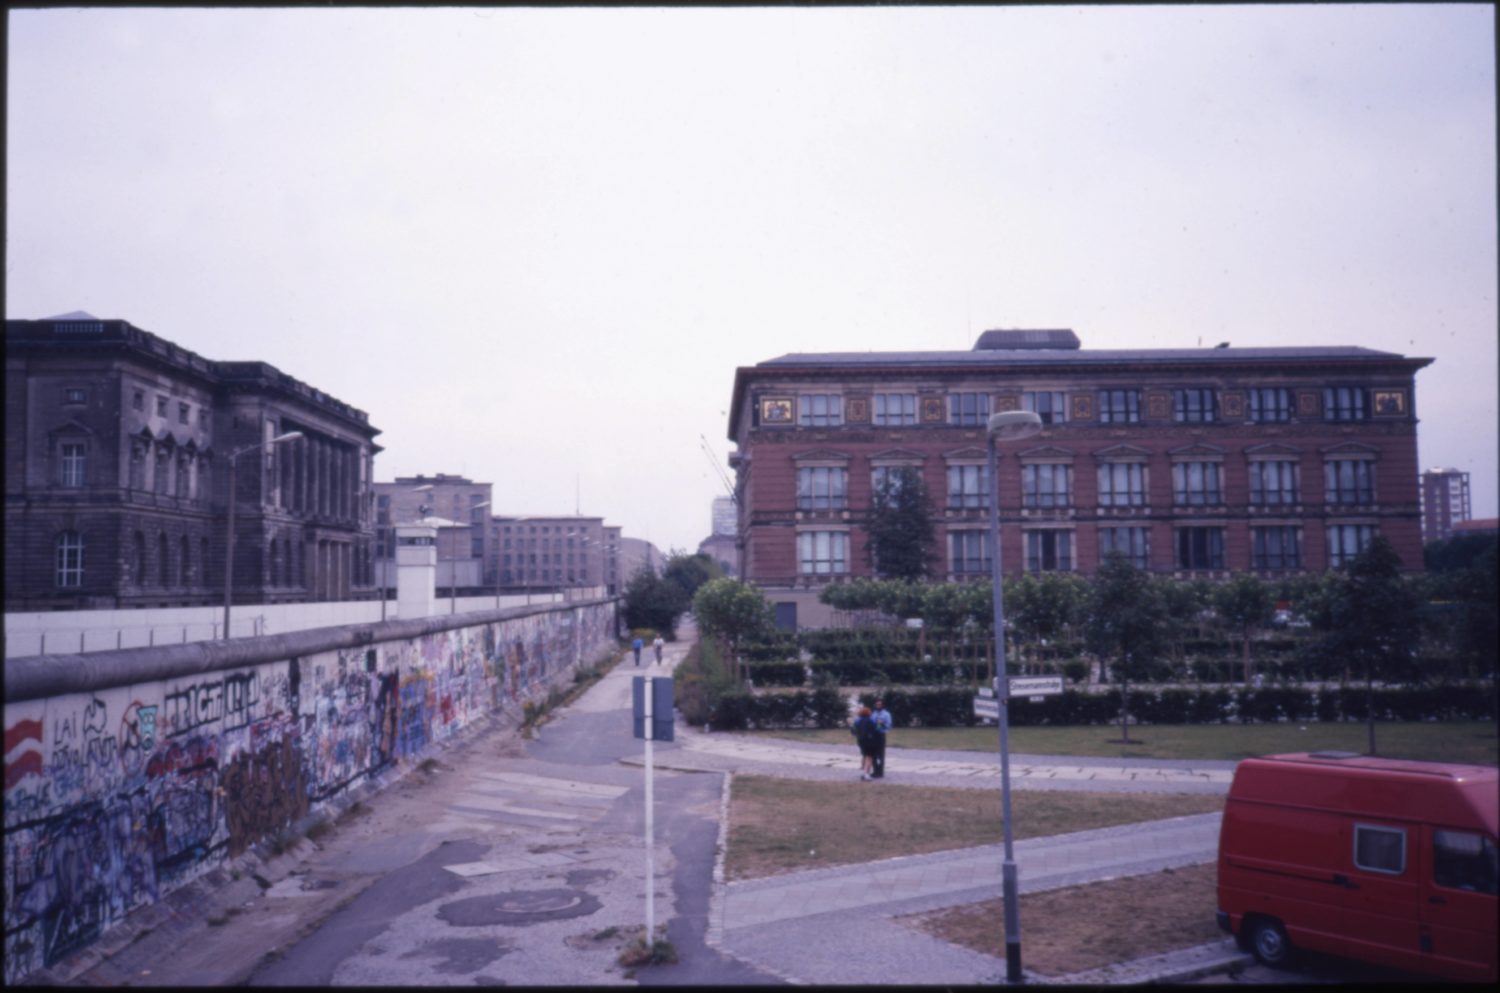 Bilder der Berliner Mauer: Hier sieht man, wie sie Kreuzberg und Mitte trennt. Rechts der Martin-Gropius-Bau, links, auf DDR-Seite, das Gebäude des Preußischen Landtags. Foto: Imago/Gerhard Leber